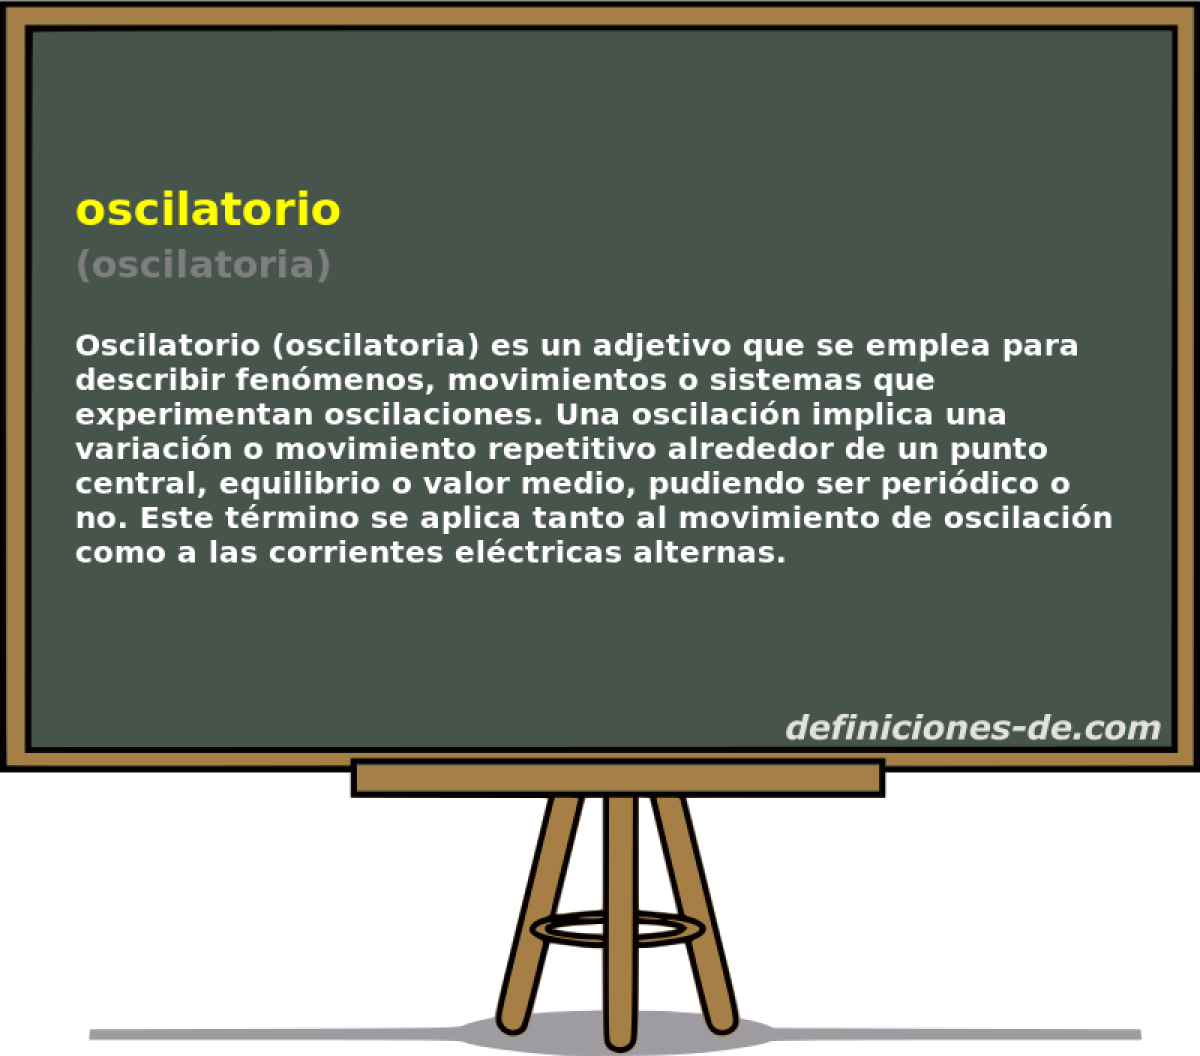 oscilatorio (oscilatoria)